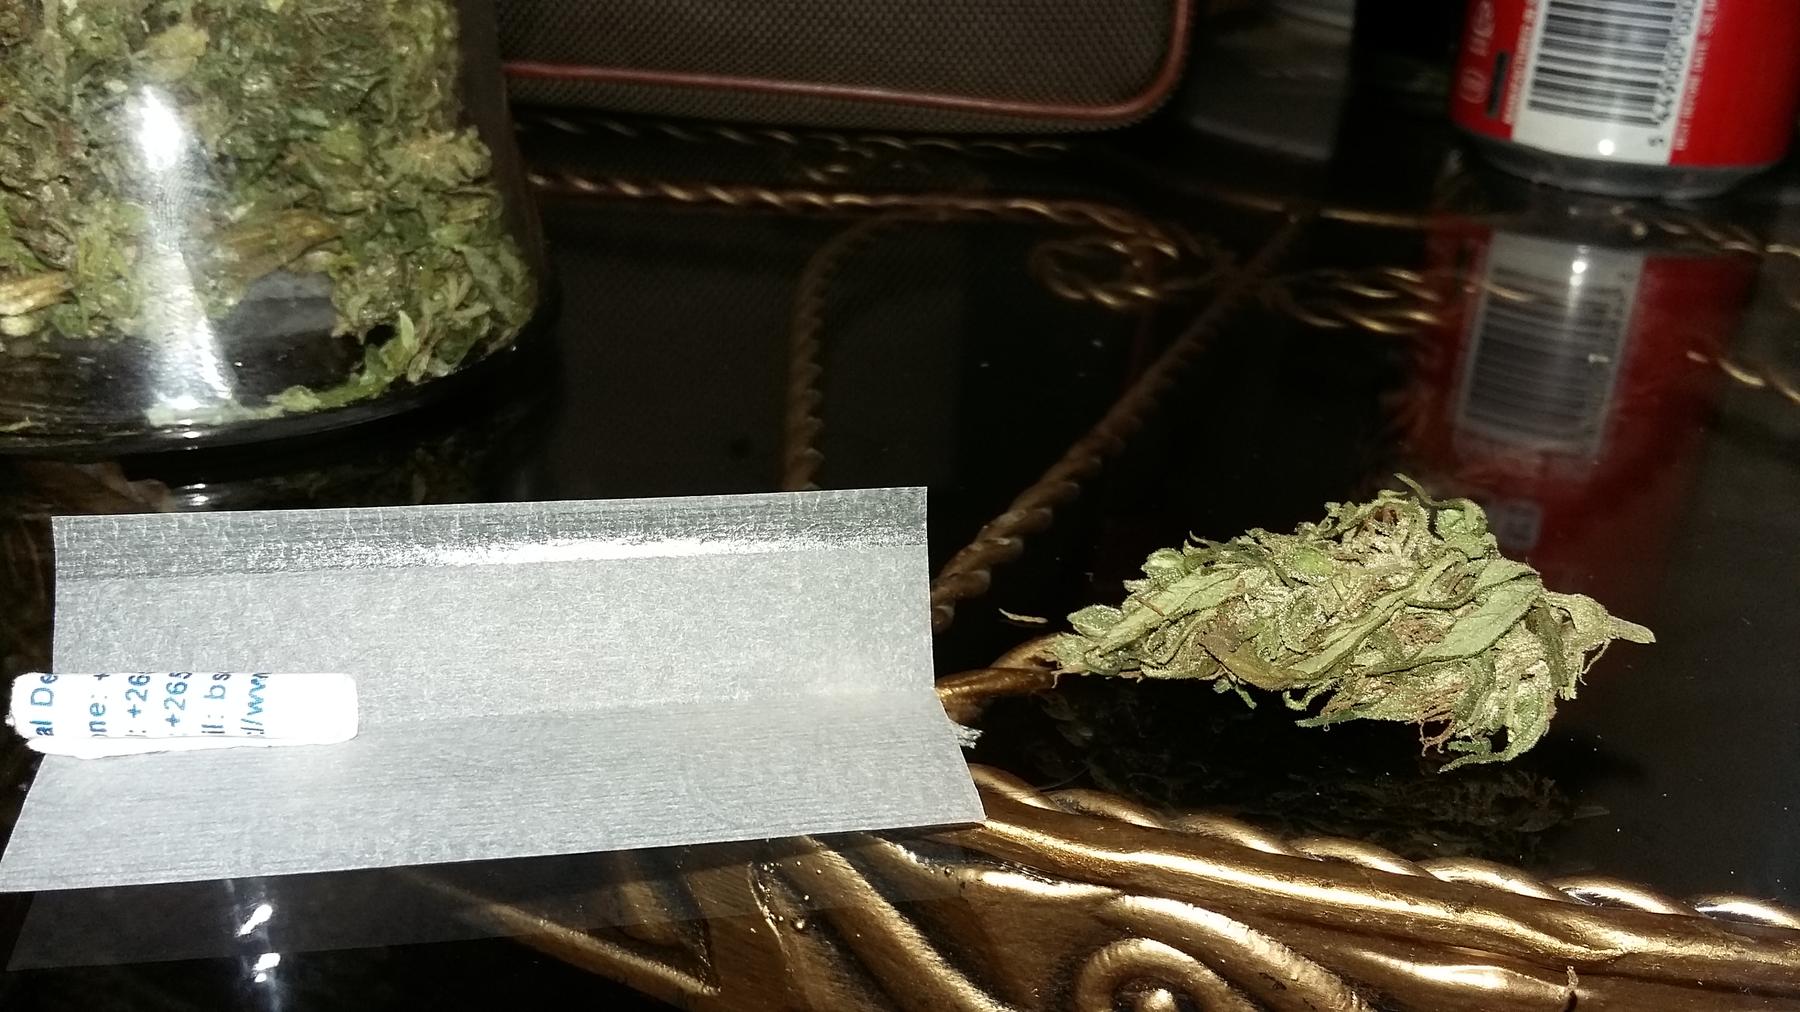 a small green leaf - File:A bud of malawi gold cannabis strain 20160813 125335.jpg